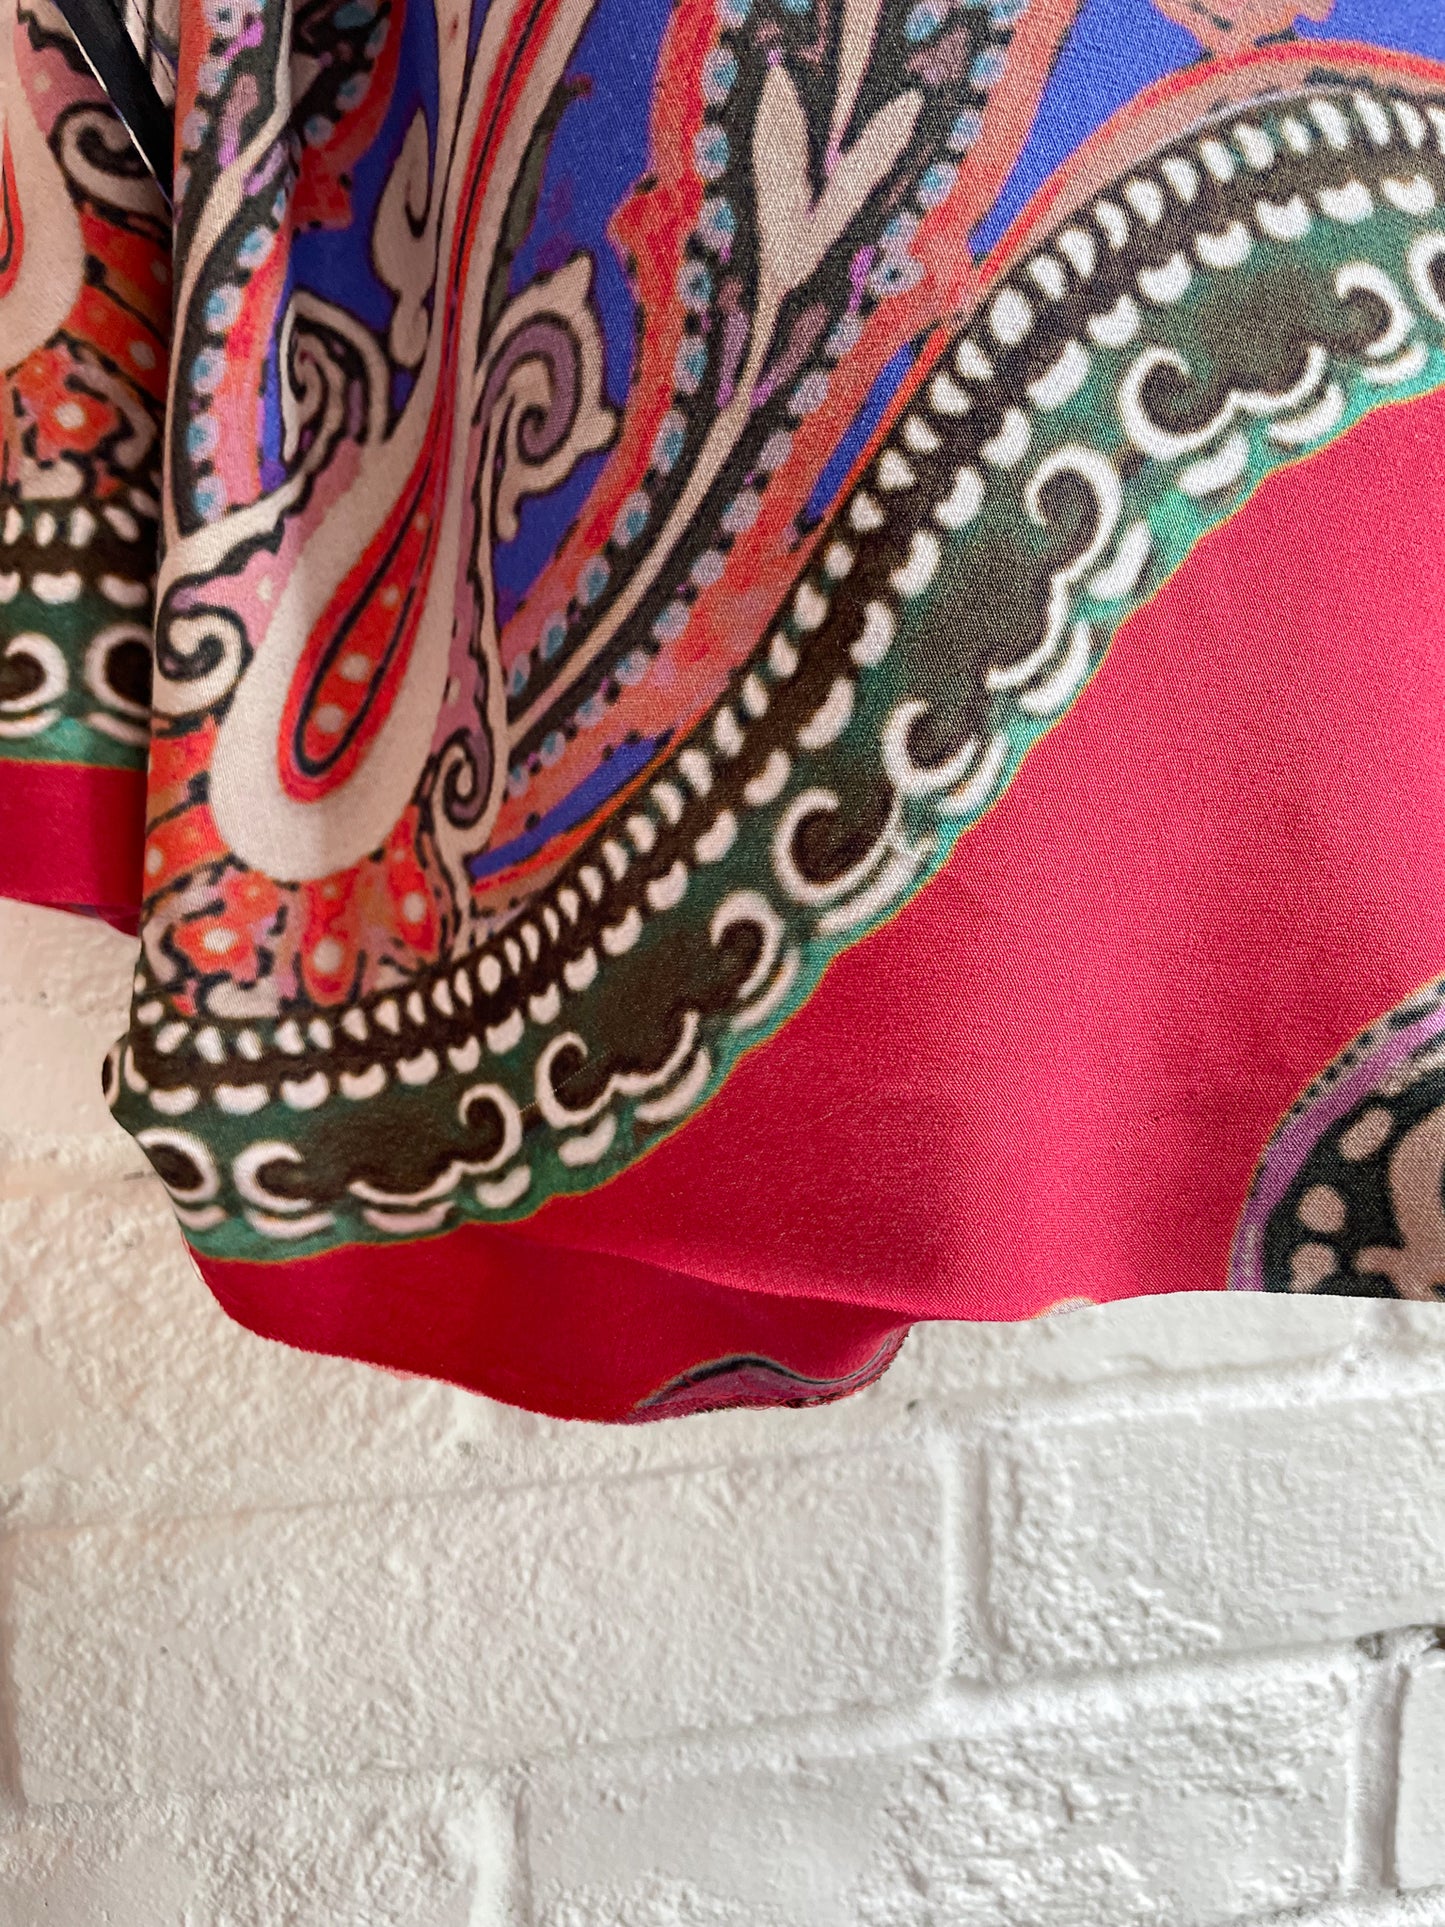 ETRO Print Sheath Dress with Asemmetrical Ruffles - Size EU 38 / XS